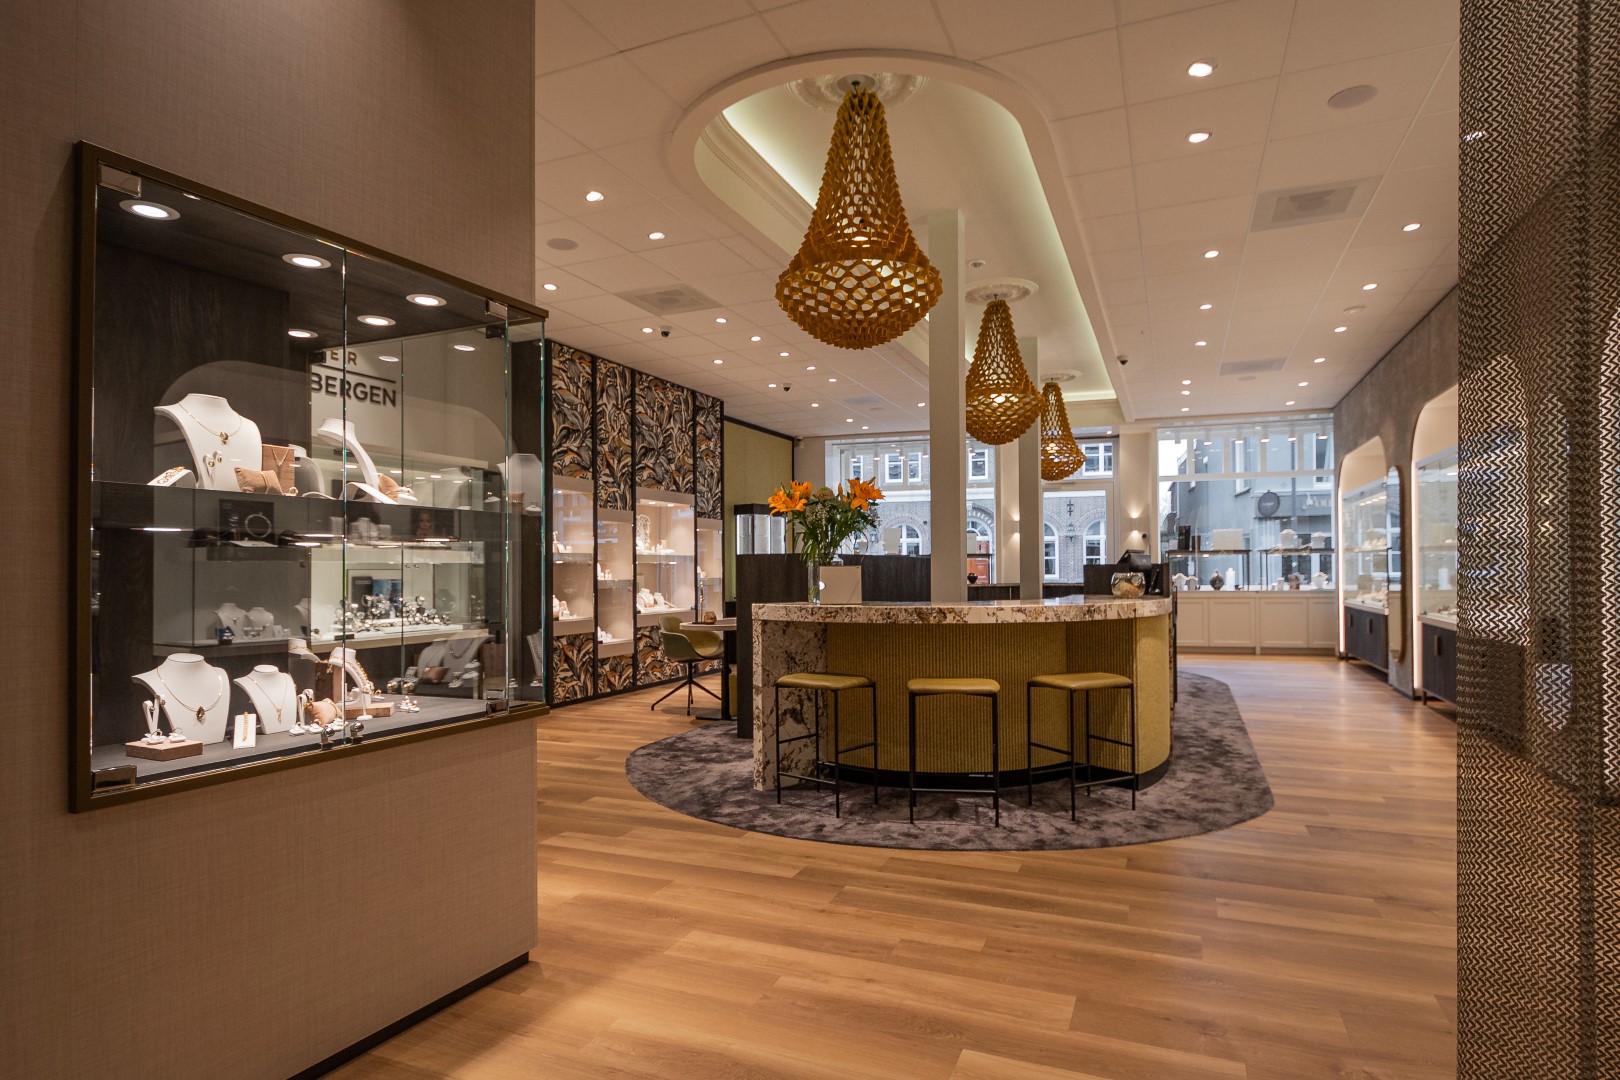 Juwelier van Arensbergen | Boxmeer (NL)